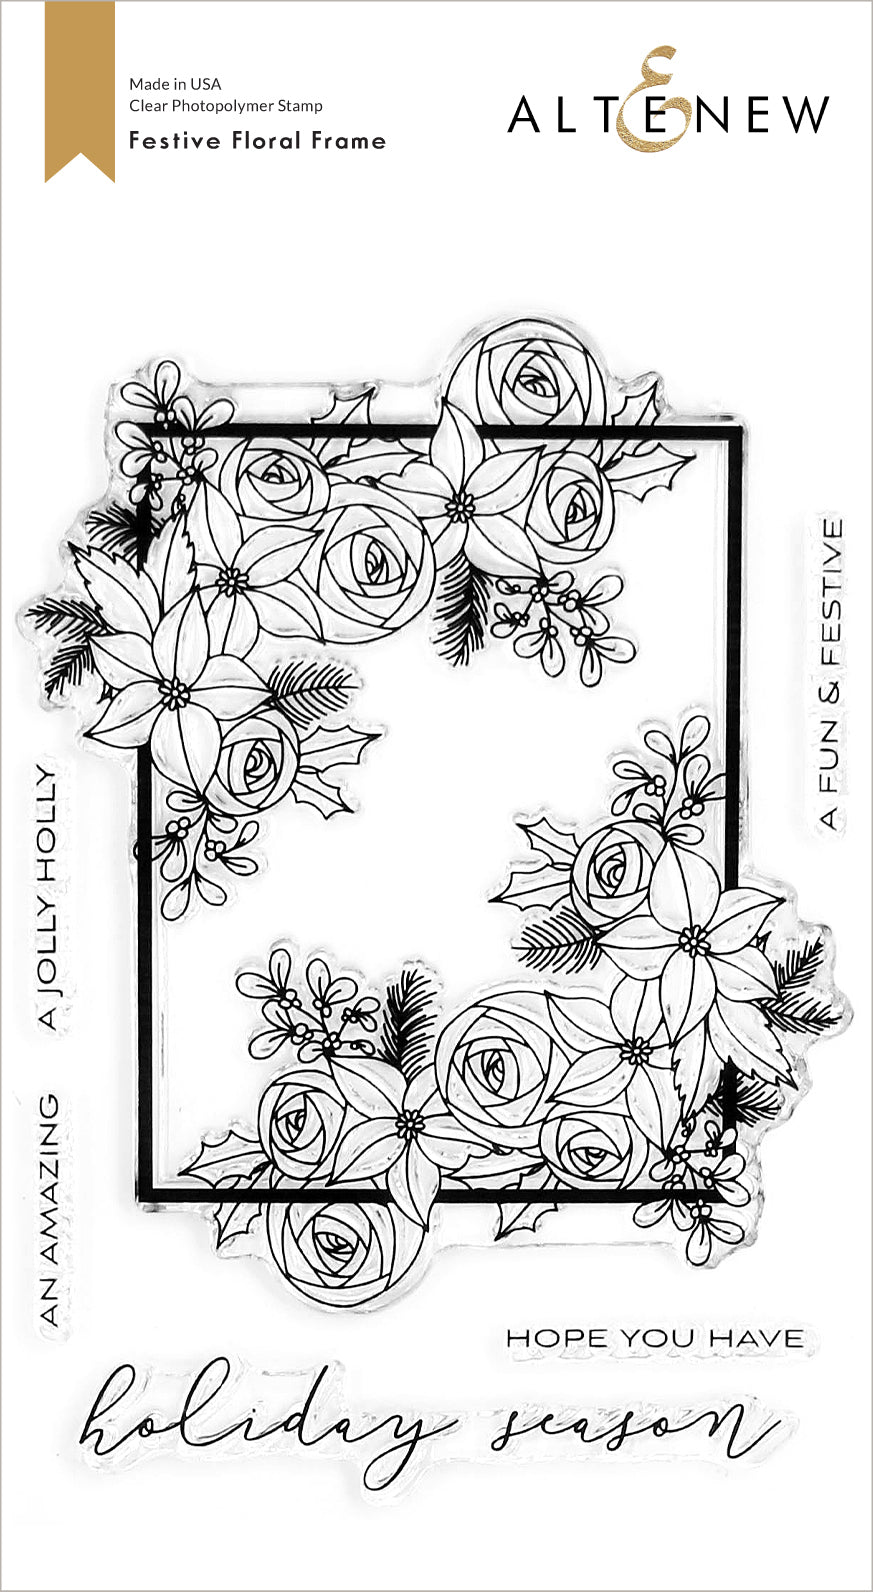 Altenew Festive Floral Frame Stamp Set